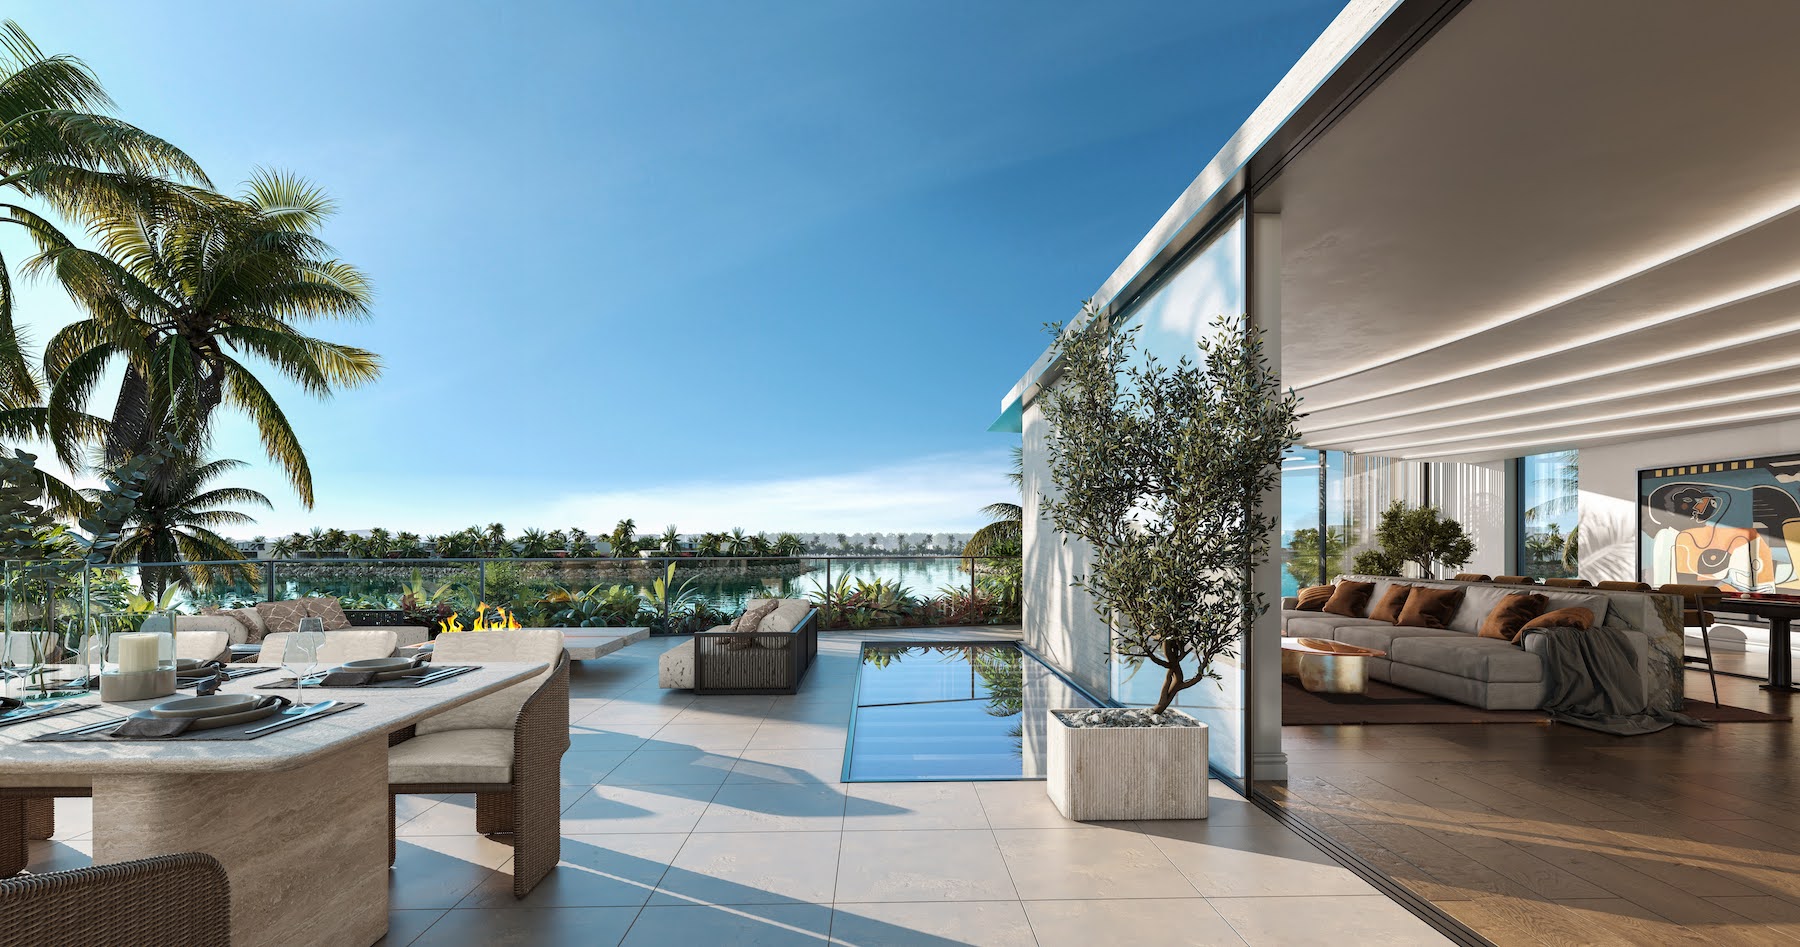 Outside terrace in a private villa in Dubai interior designed by Bergman Design House in Effect Magazine